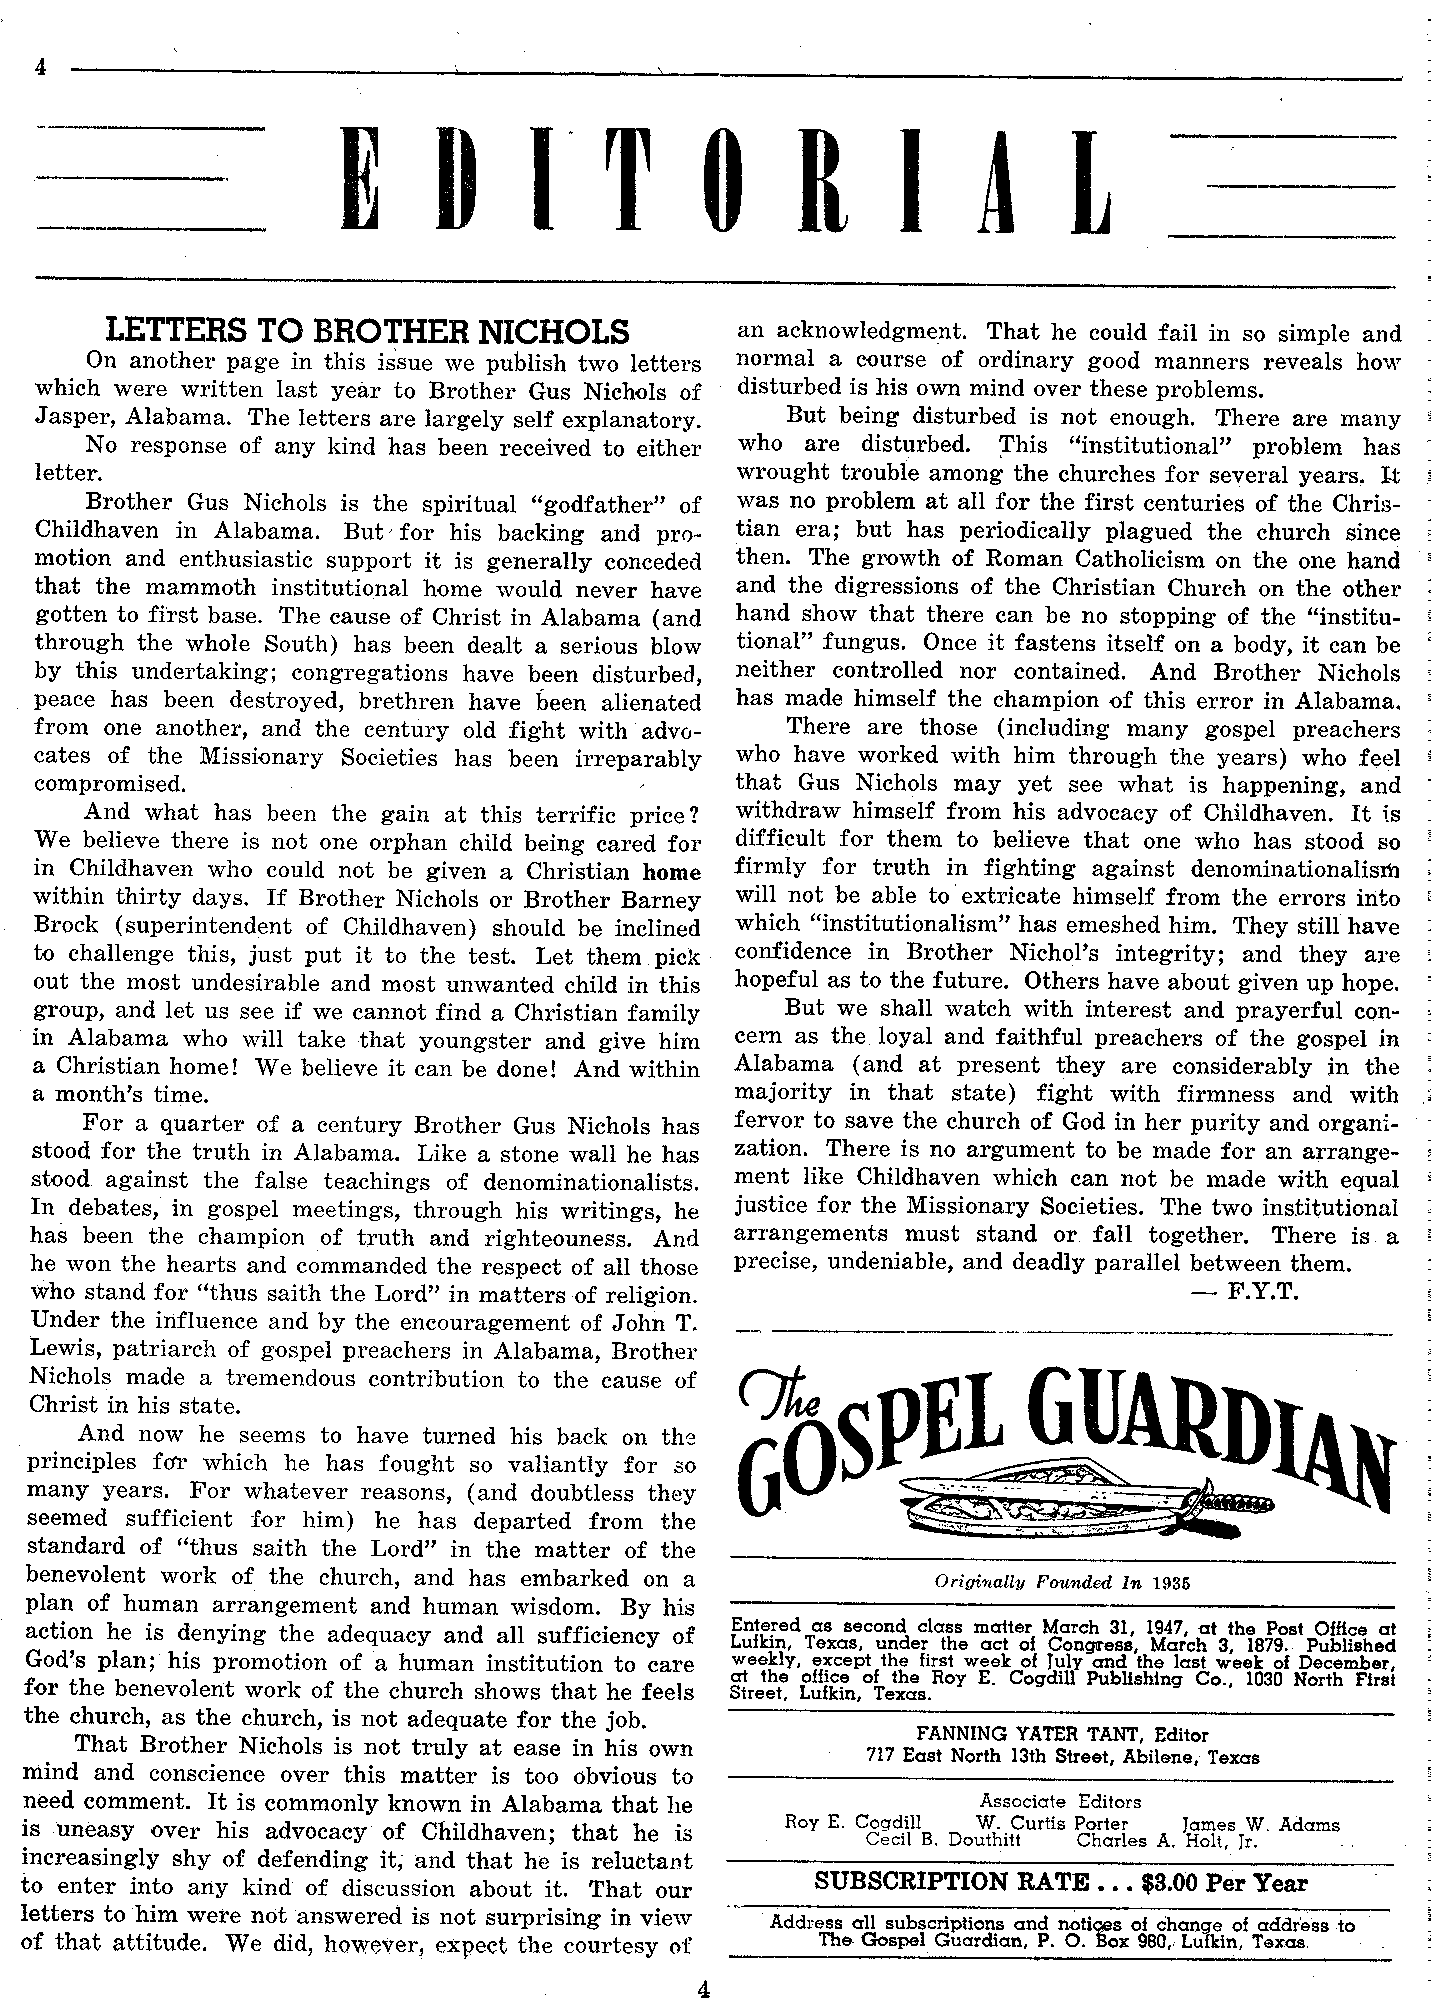 Gospel Guardian Original: Vol.5 No.1 Pg.4